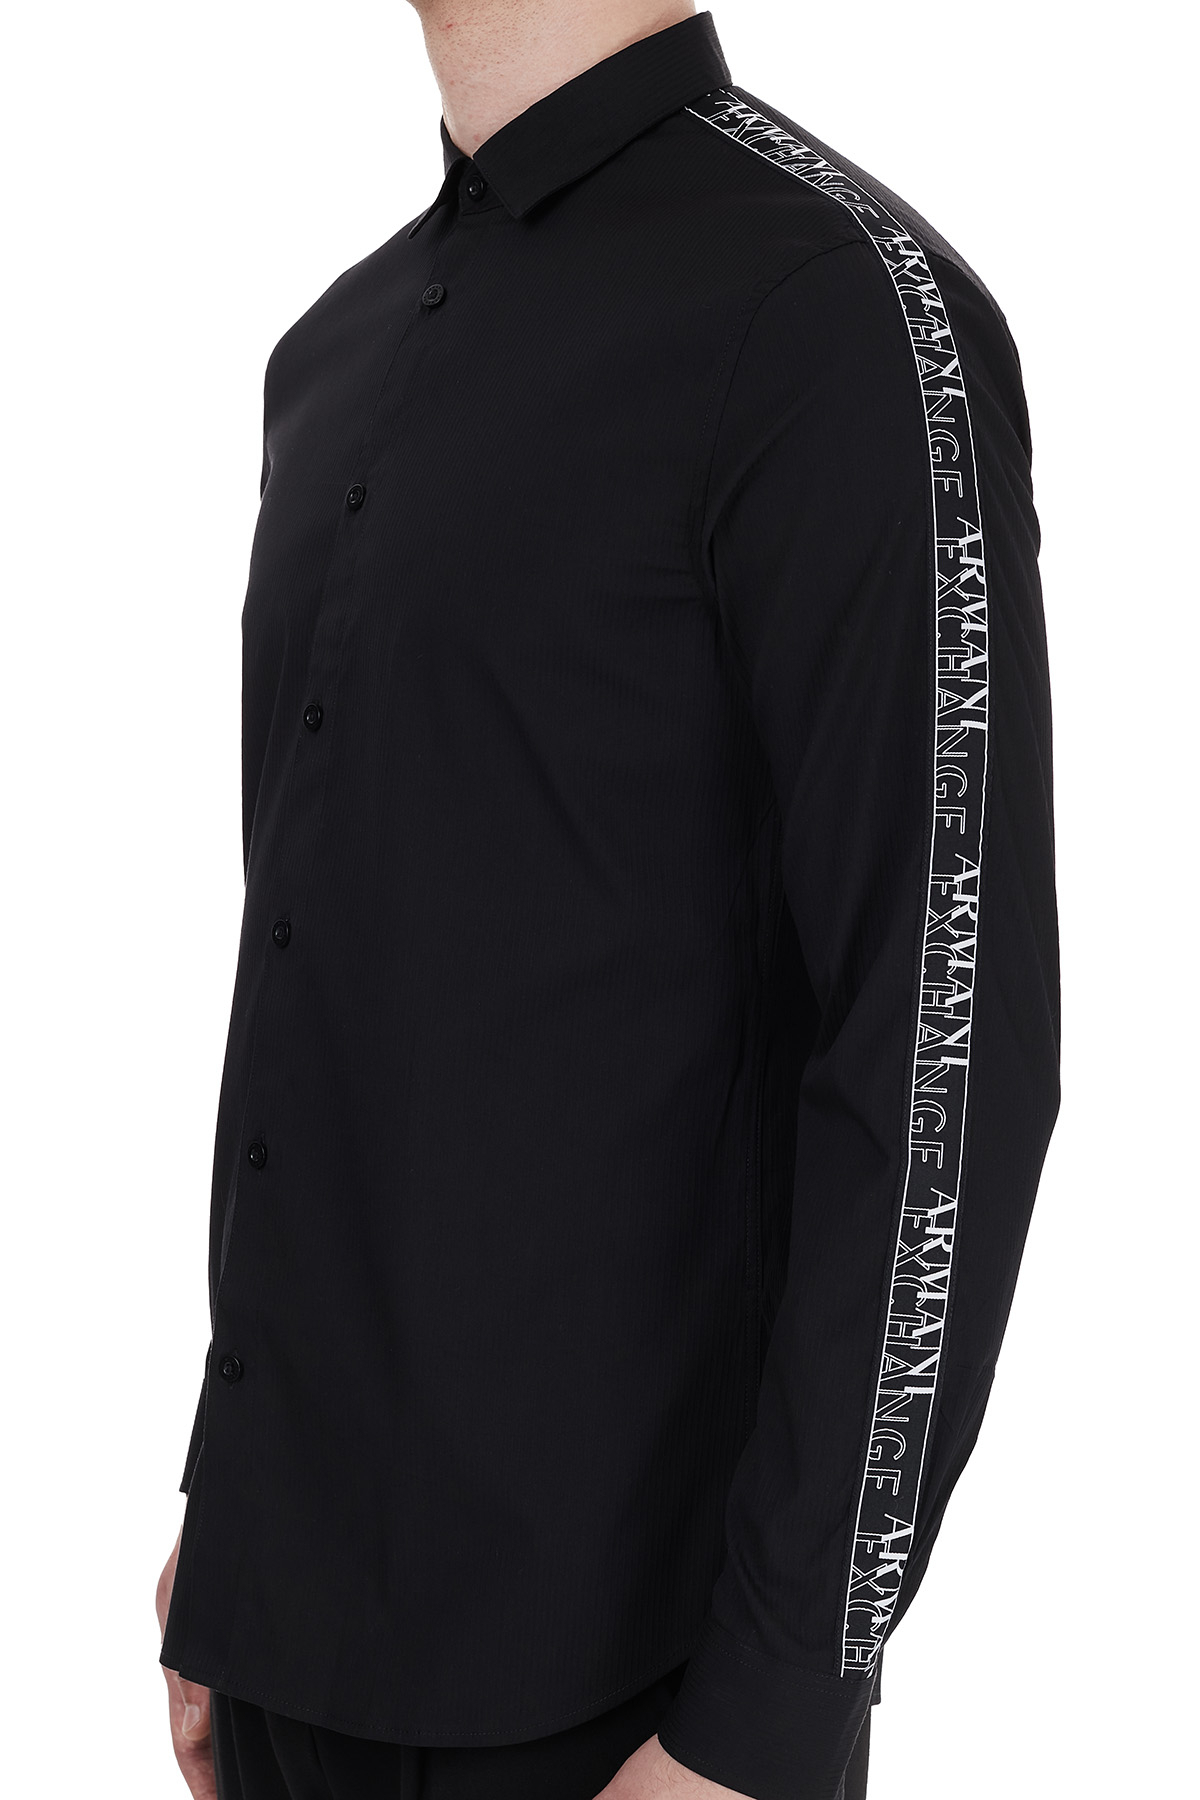 Armani Exchange Kontrast Logo Baskılı Uzun Kollu Erkek Gömlek 6HZC06 ZNY2Z 1200 SİYAH